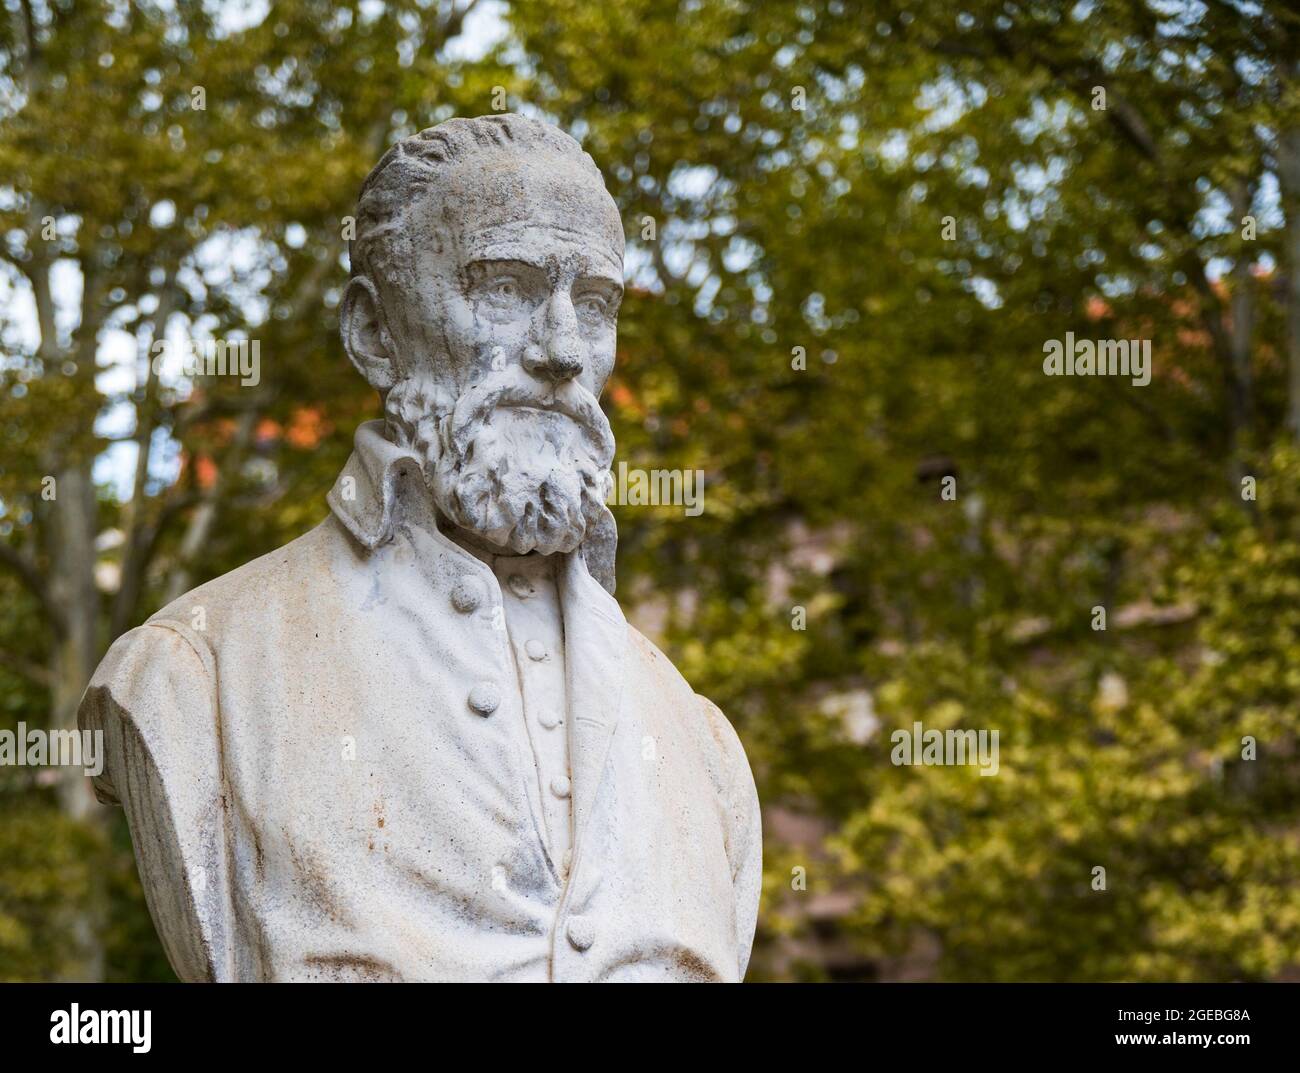 Statue of Clovio Clovic in Zrinjevac Park, Zagreb, Croatia Stock Photo